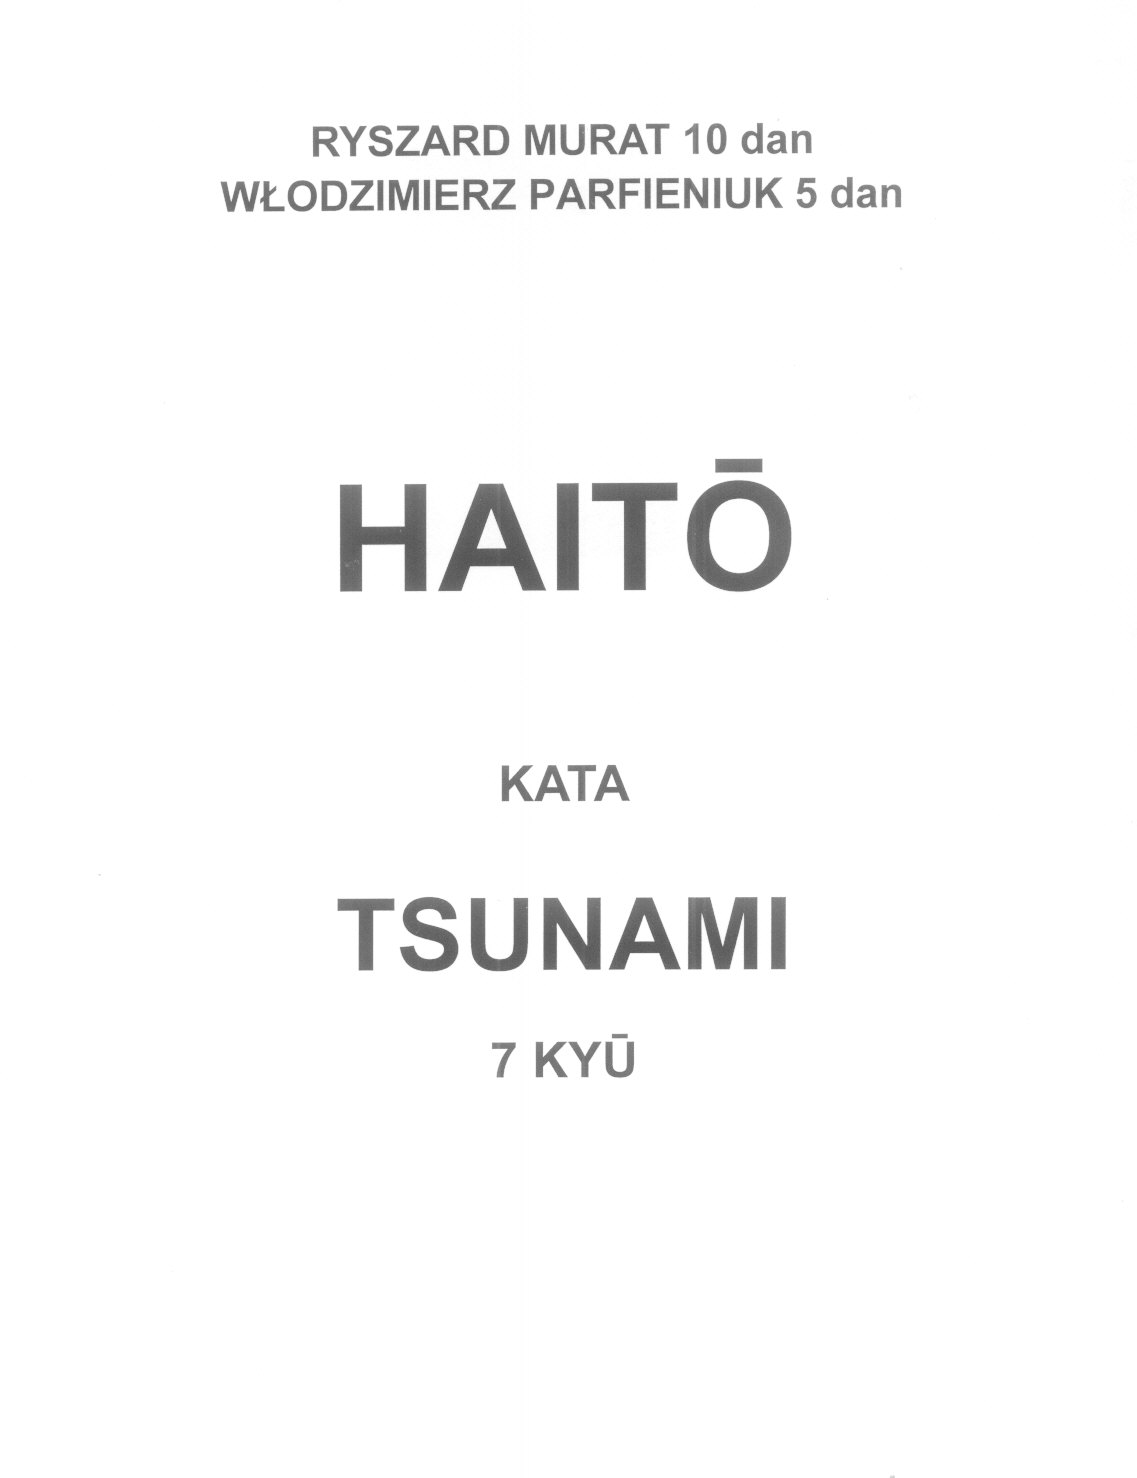 Haito